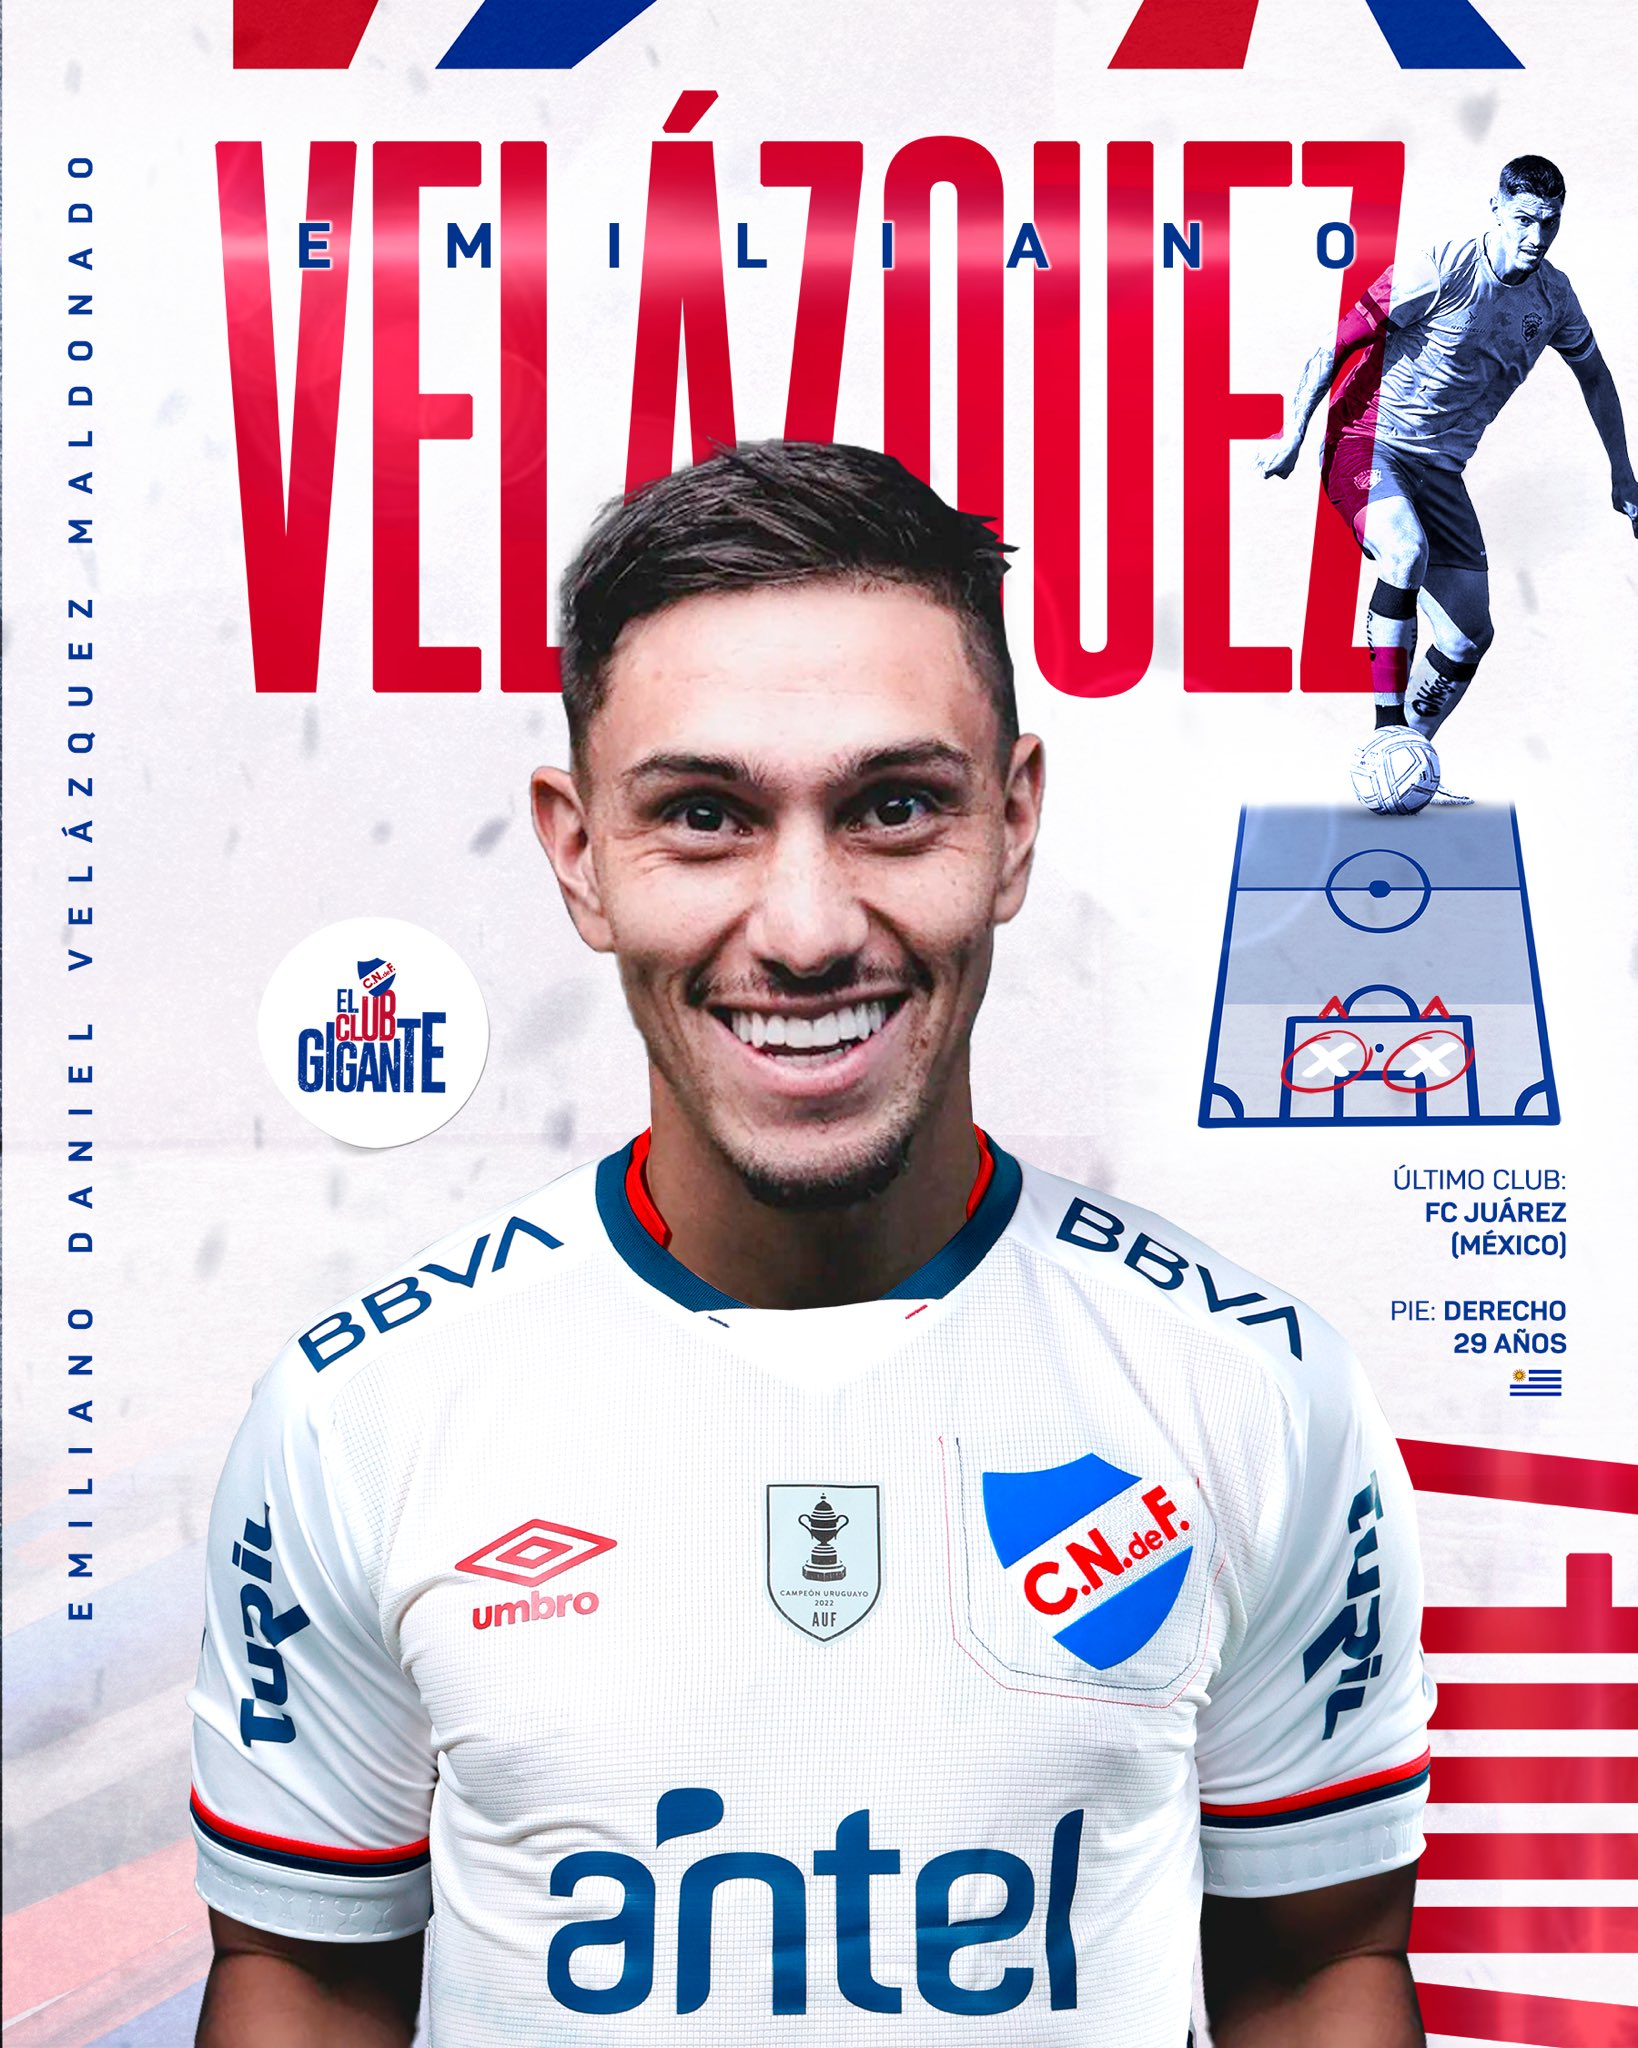 Emiliano Velázquez ya es jugador de Nacional